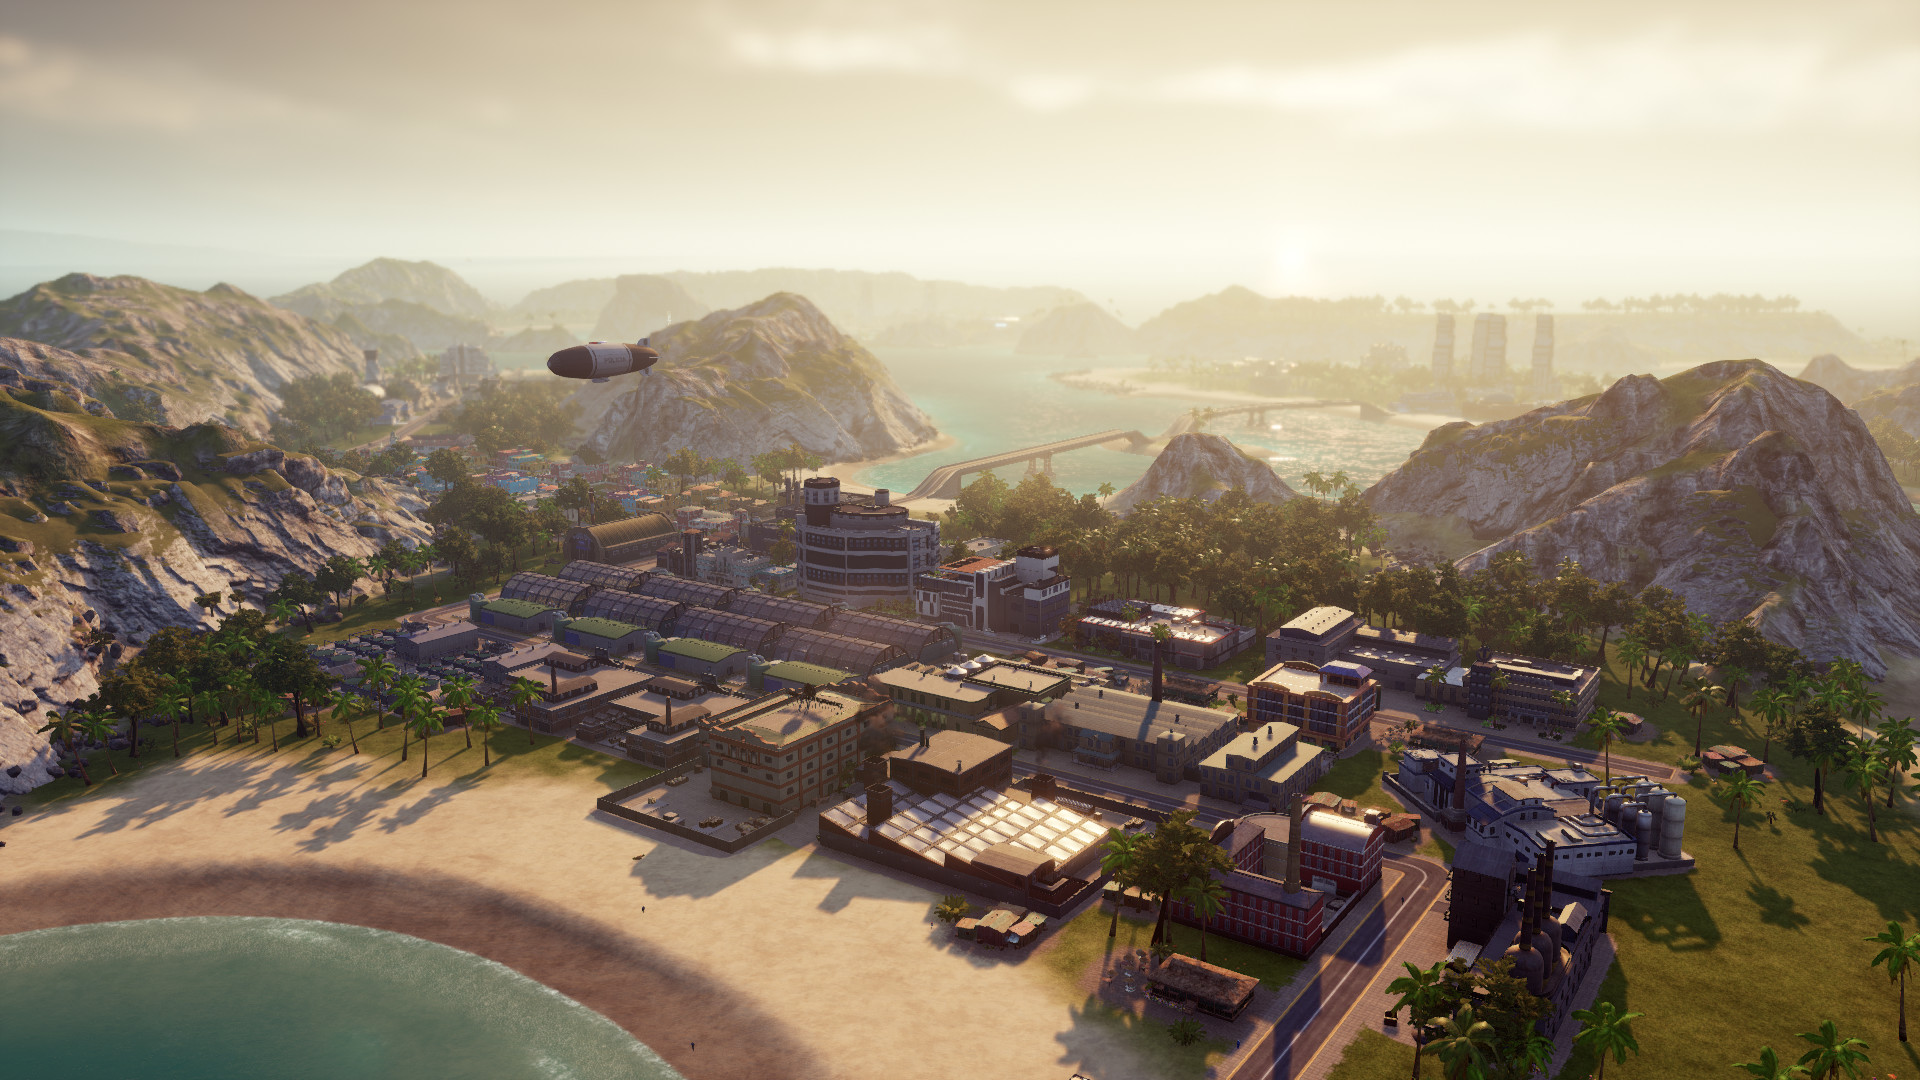 تحميل لعبة بناء المدن Tropico 6: El Prez Edition - 2019 نسخة ريباك بمساحة  4.8 GB Ss_0af6de16d49c5f9afde250b2fb6145cd895c76c8.1920x1080